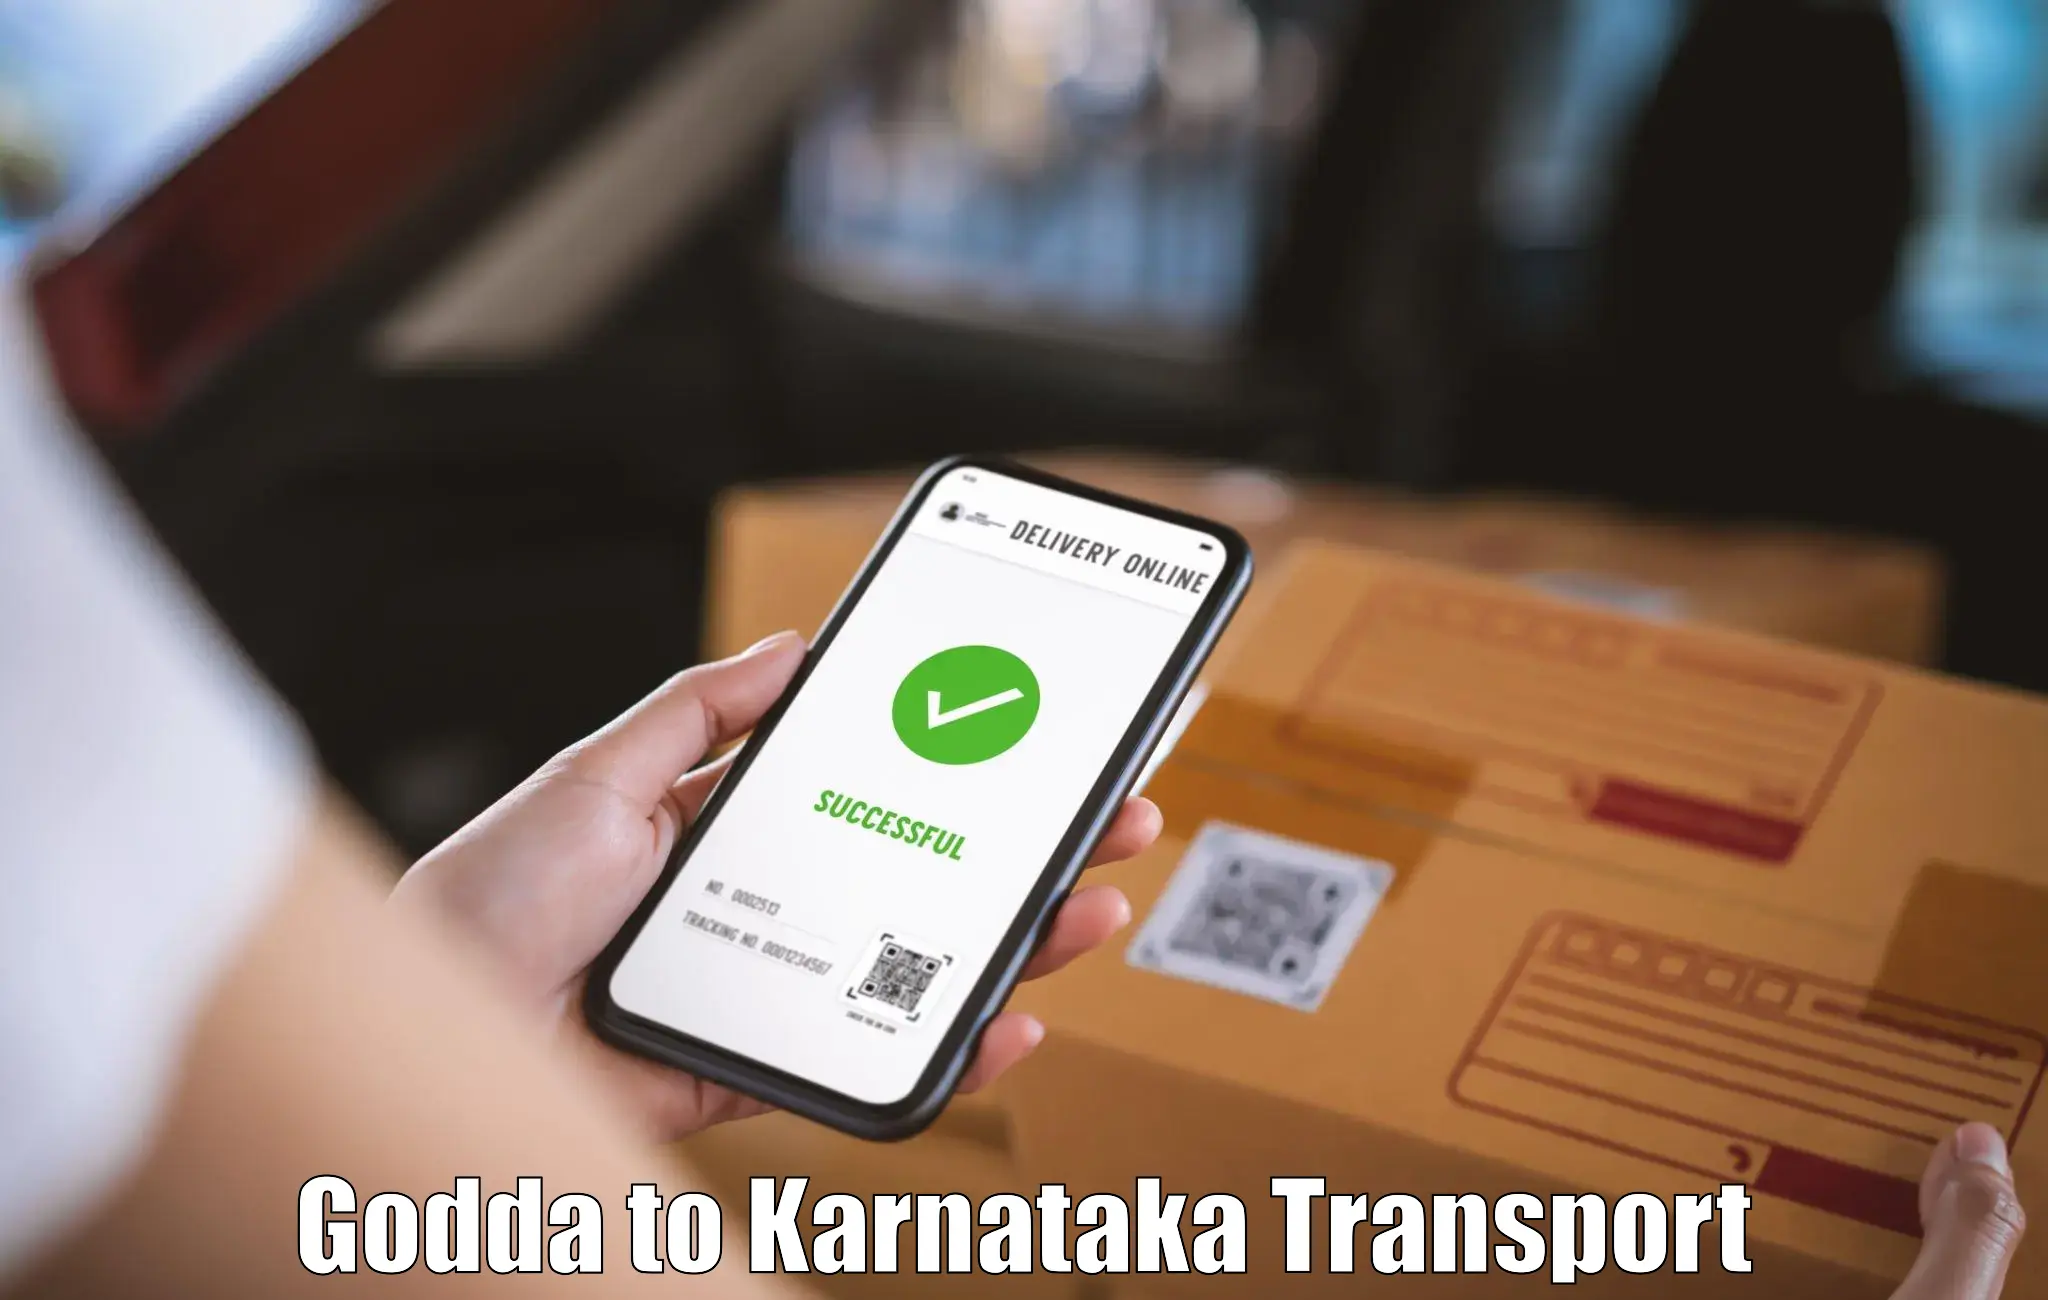 Commercial transport service Godda to Kanjarakatte